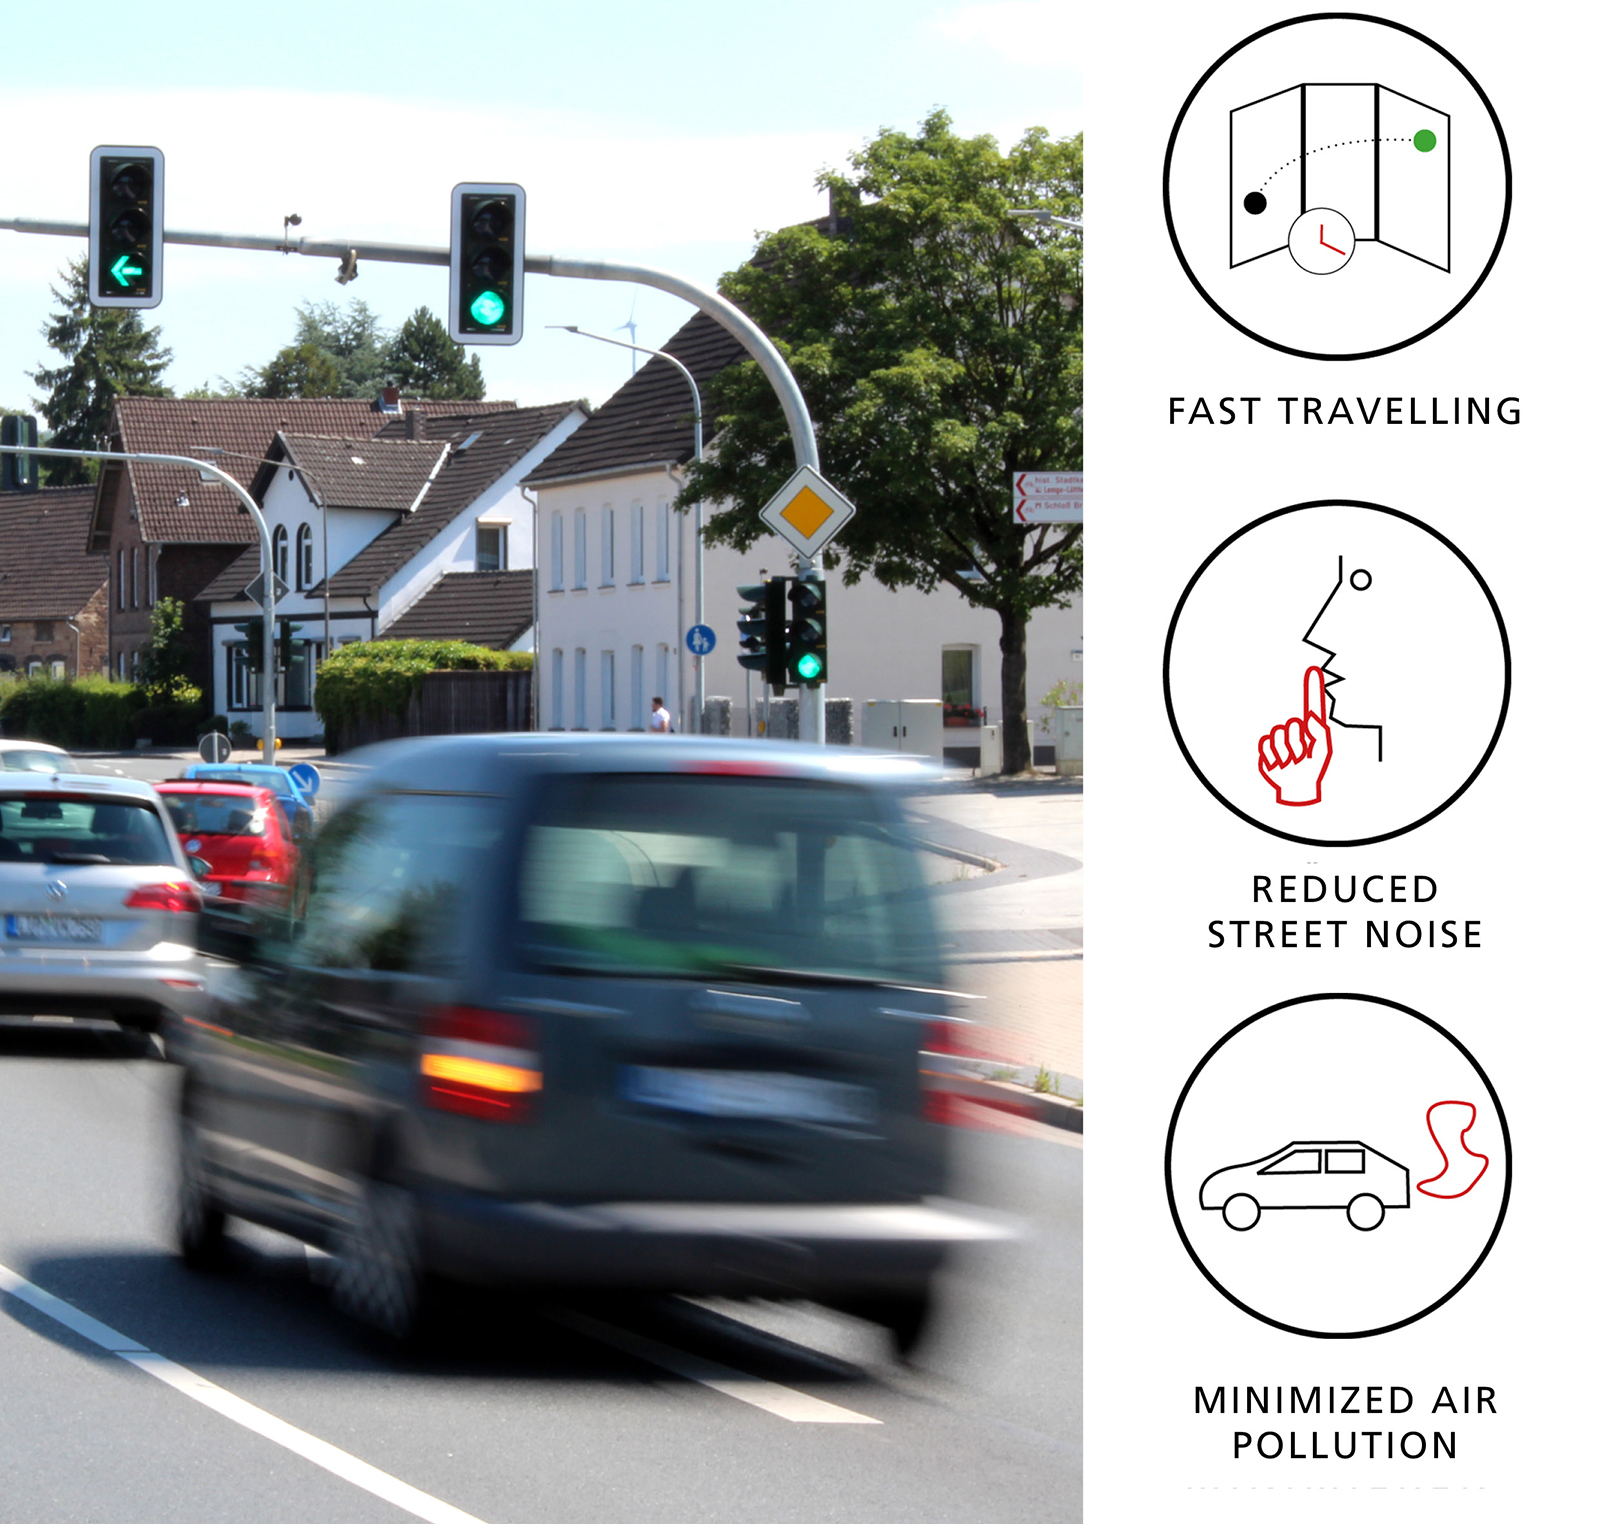 Die trainierten Algorithmen ermitteln das beste Ampel-Schaltverhalten, um den Verkehrsfluss zu optimieren, den durch Staus entstehenden Lärm und die CO2-Belastung zu senken.